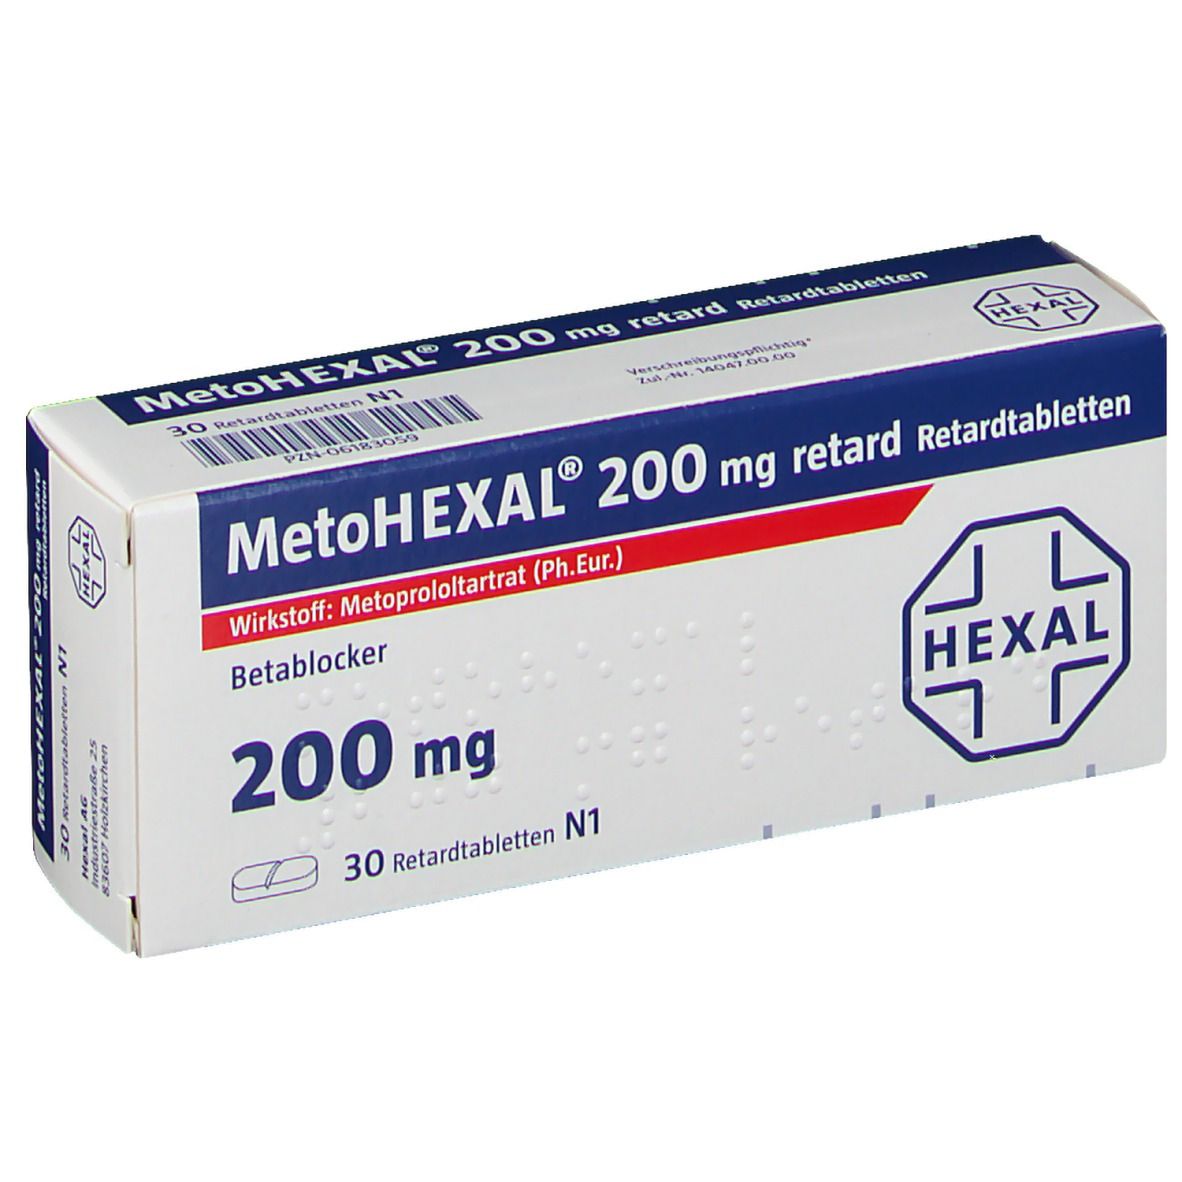 MetoHEXAL® 200 mg retard